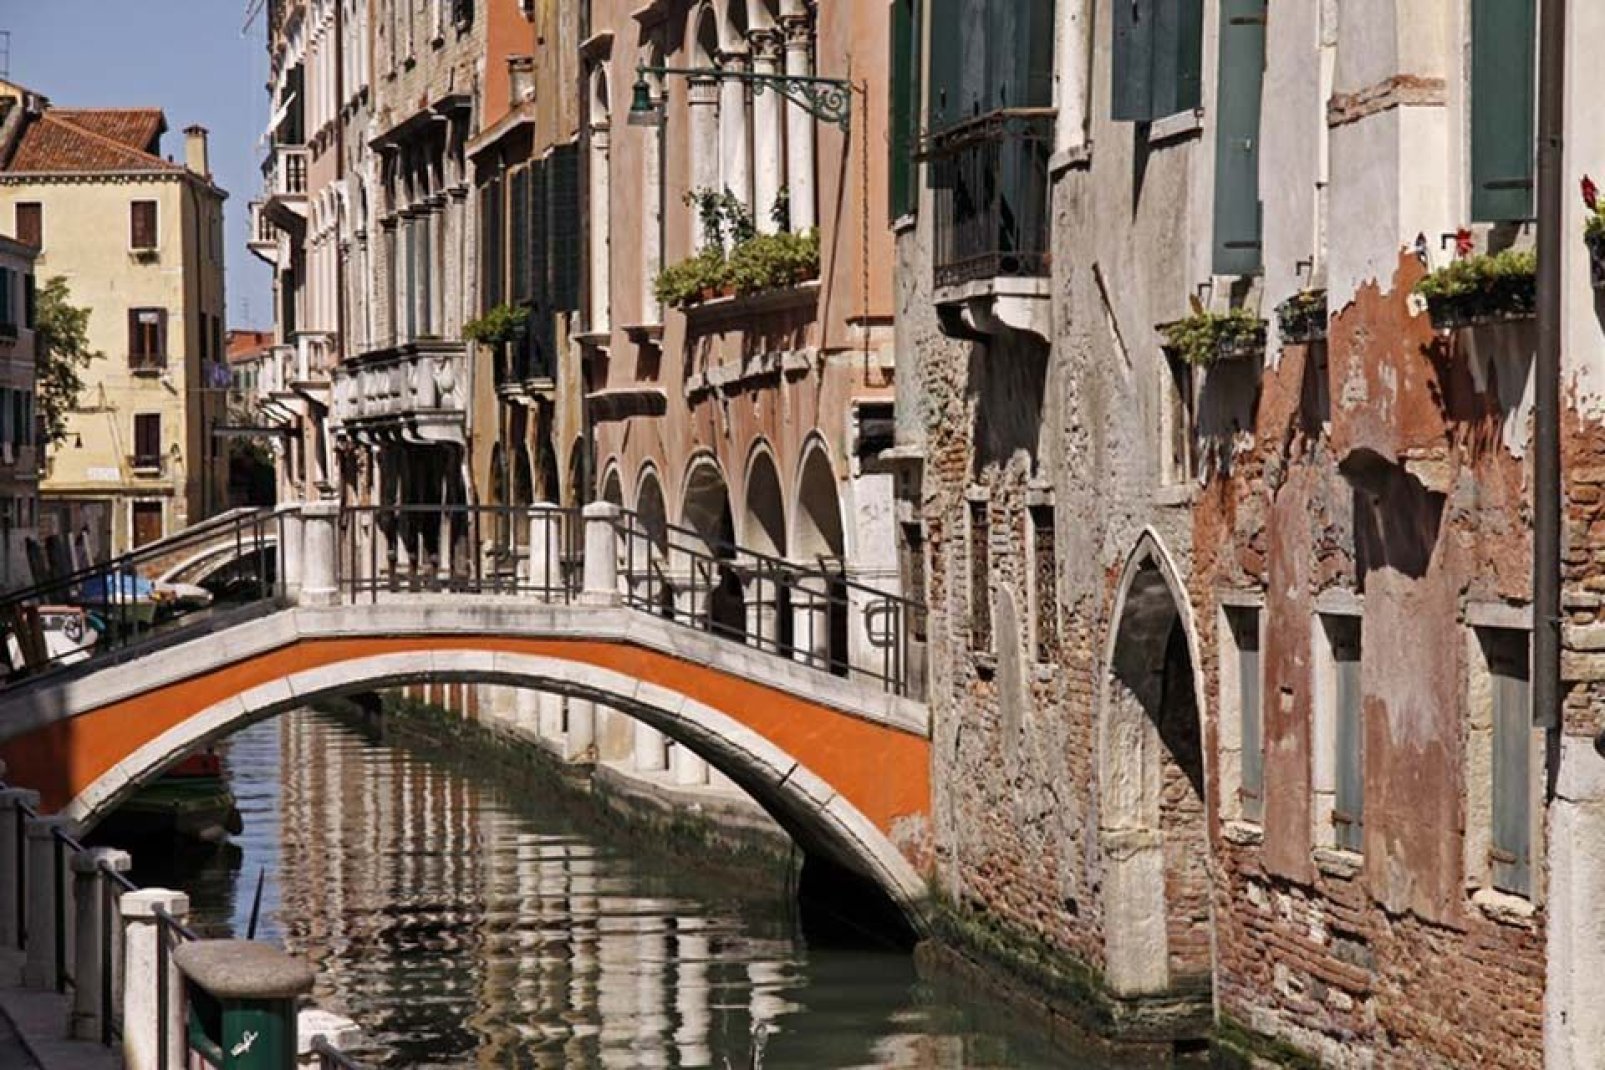 354: Das ist die Zahl der Brücken, die über die Kanäle führen und dem Stadtbild von Venedig seinen einzigartigen Zauber verleihen.